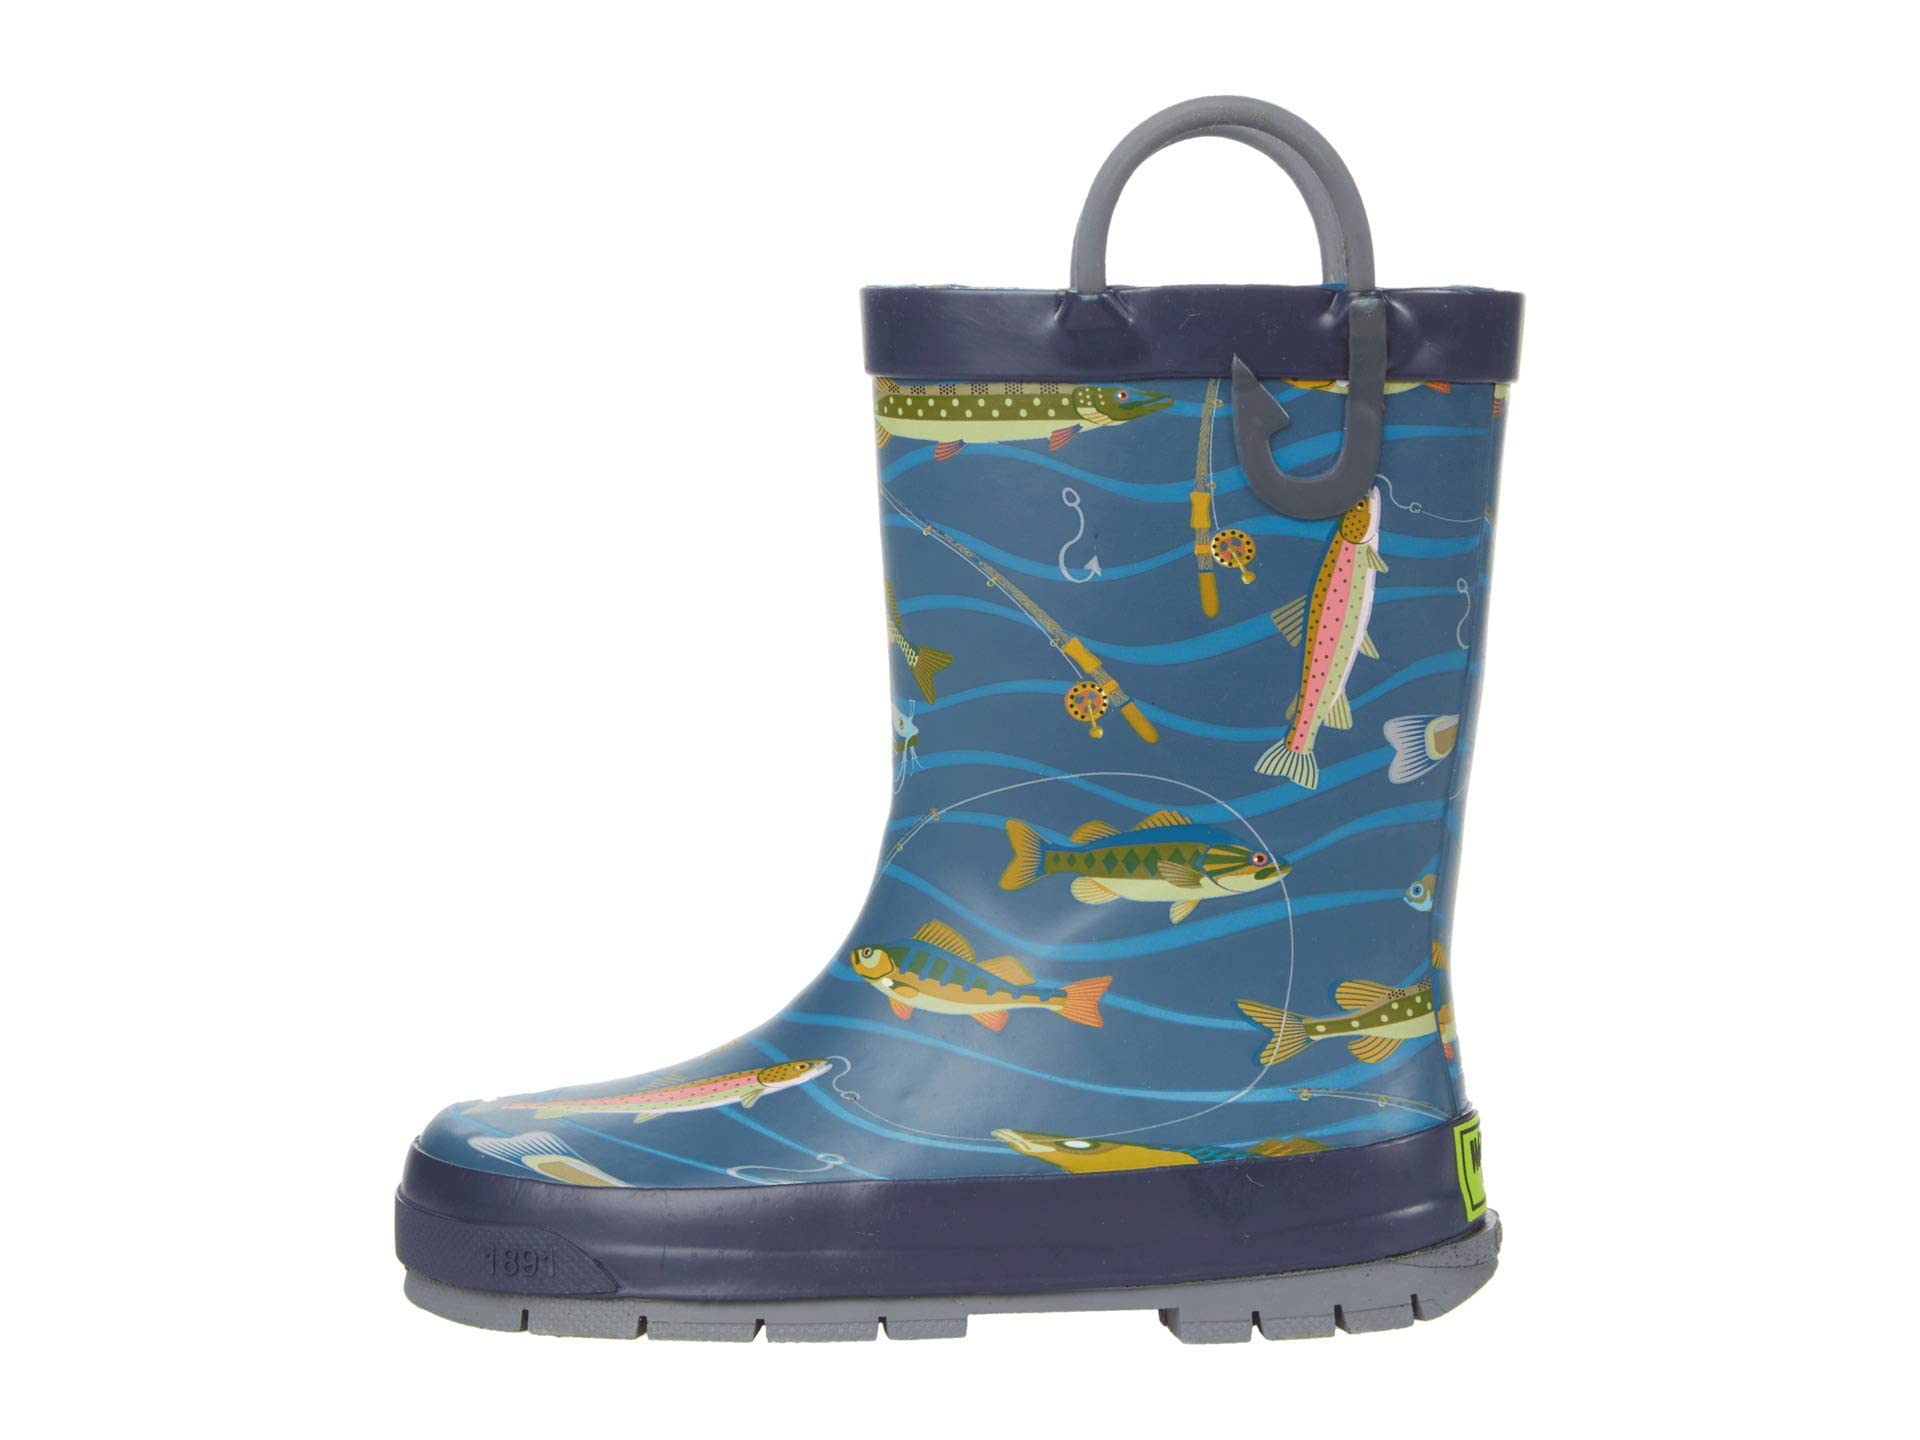 Western Chief Kids' Waterproof Printed Rain Boot with Easy Pull on Handles